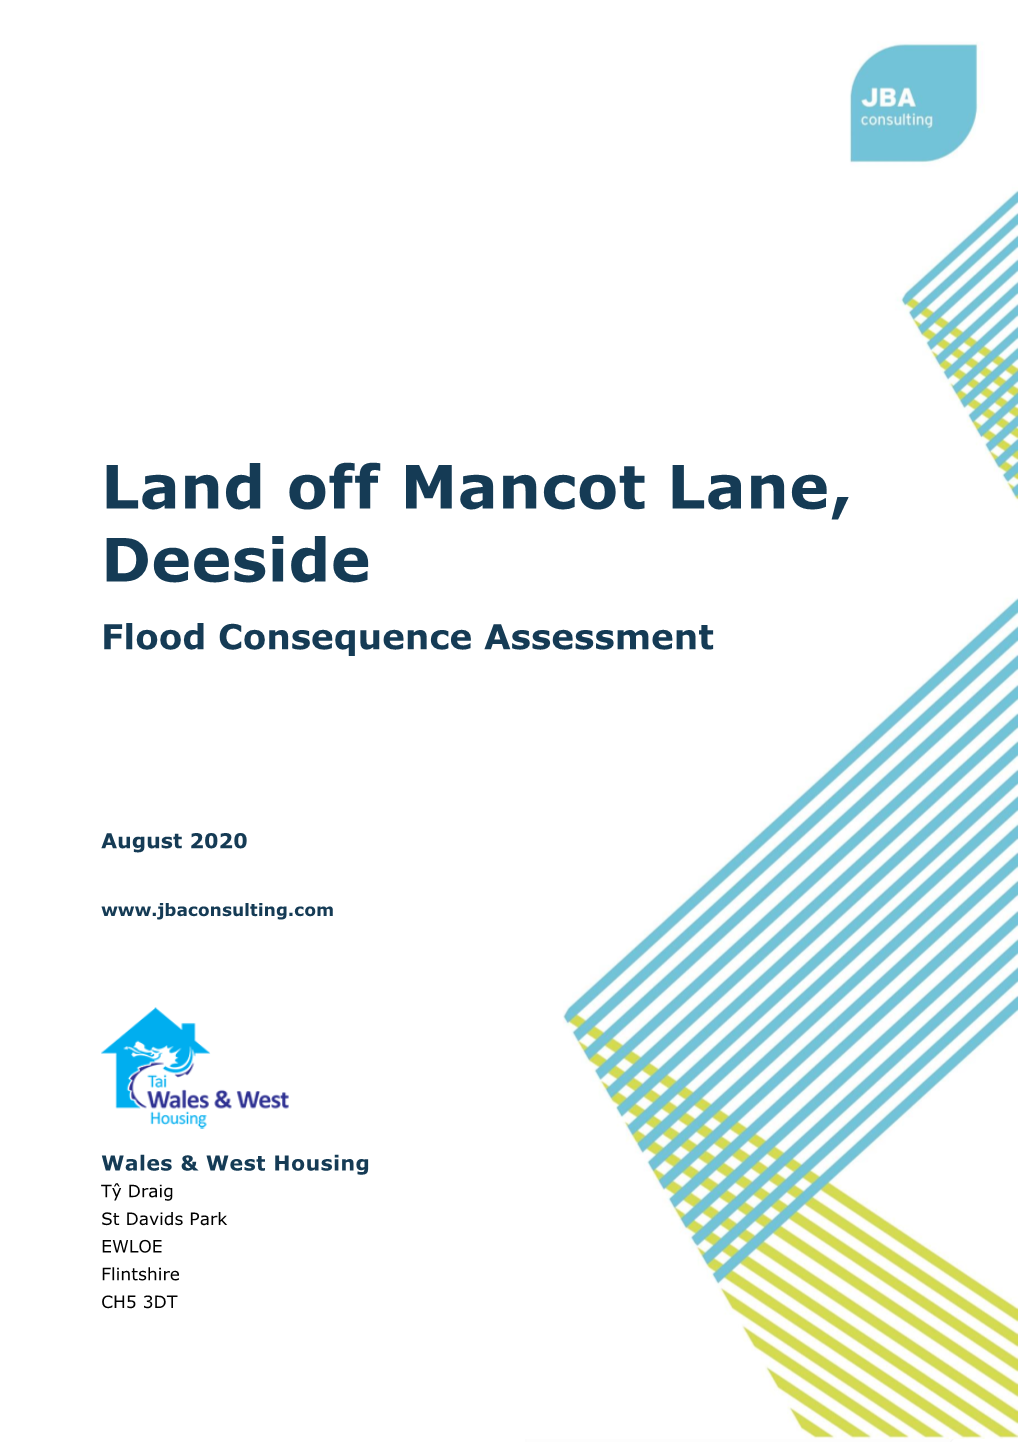 Land Off Mancot Lane, Deeside Flood Consequence Assessment